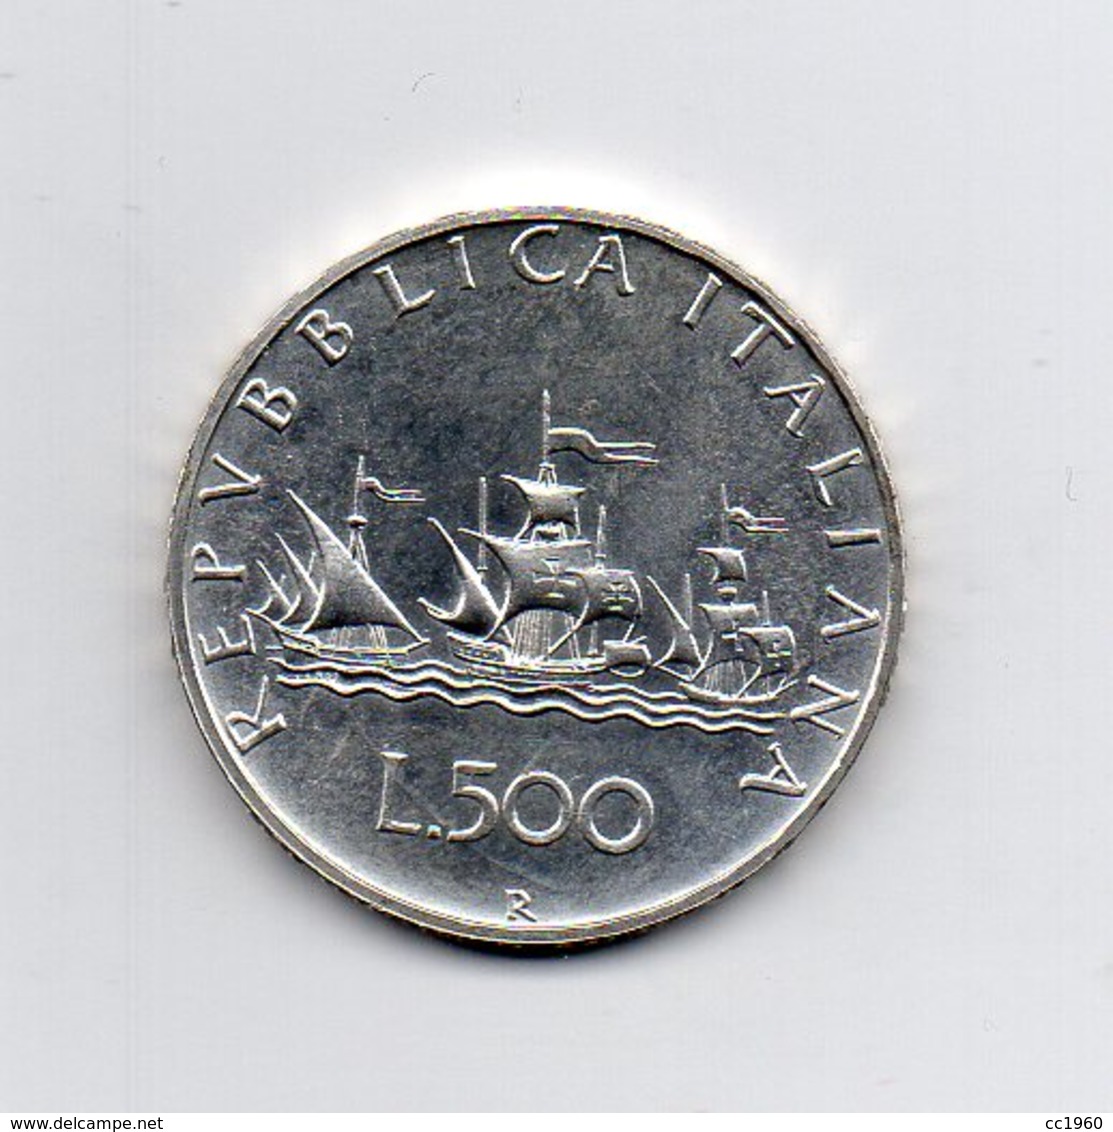 ITALIA - 1980 - 500 Lire "Caravelle" - Argento 835 - Peso 11 Grammi - (MW2174) - 500 Lire